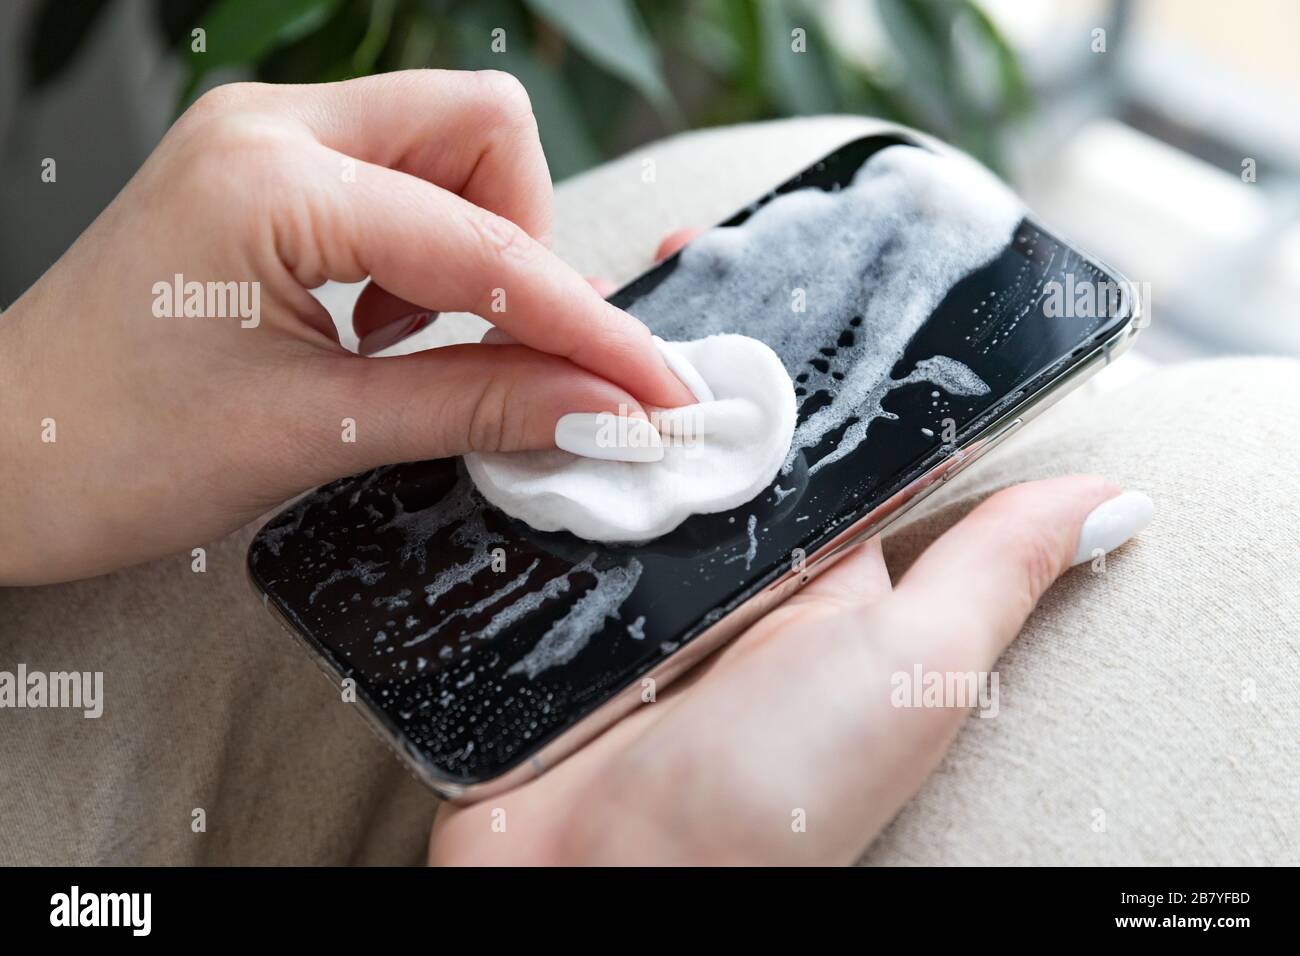 Femme nettoyant le téléphone mobile pour éliminer les germes, le coronavirus, le covid-19, les bactérias. La femme désinfecte son smartphone en appliquant une désinfection aseptisante/alcoolisée Banque D'Images